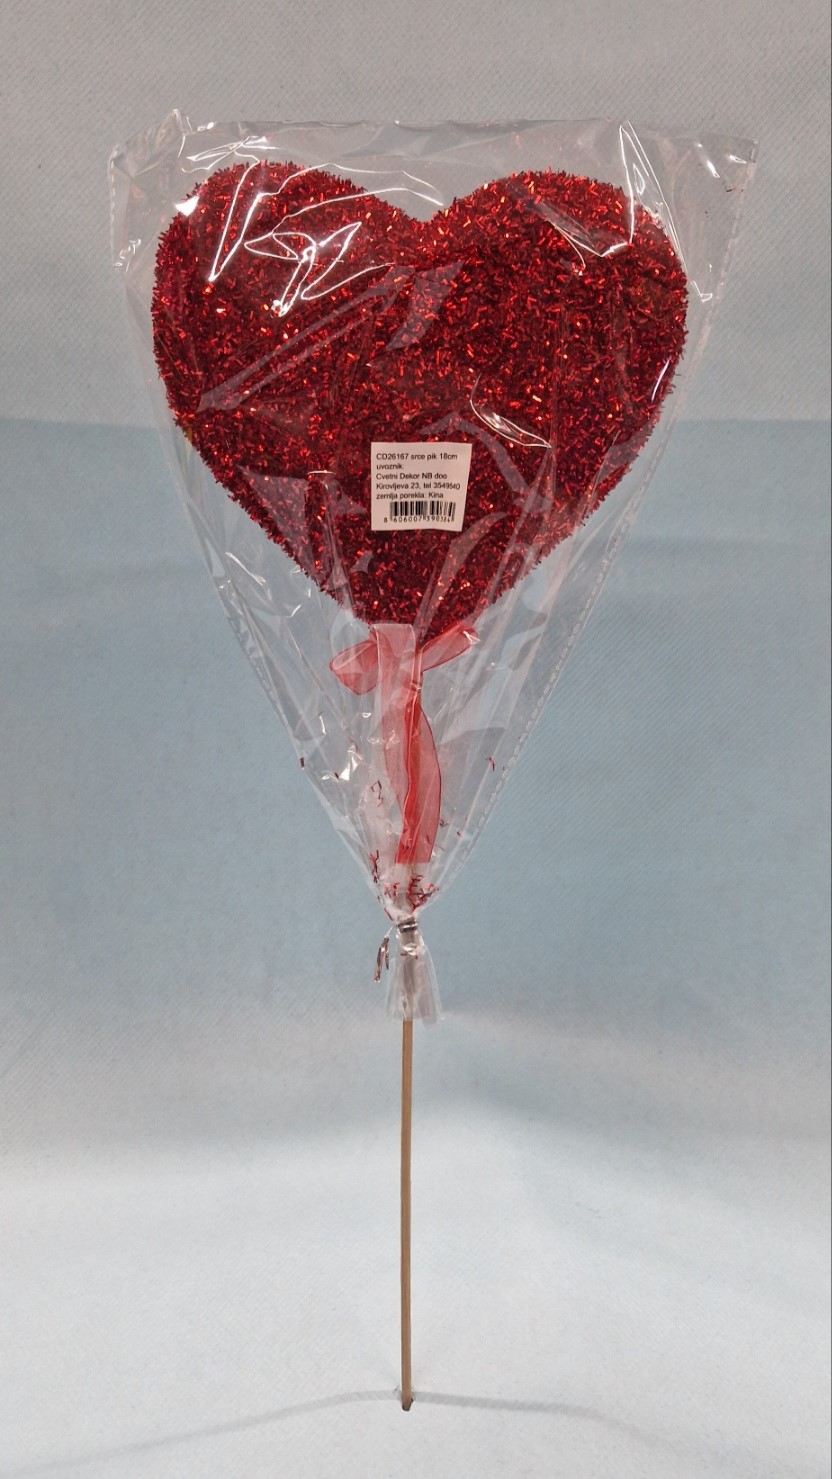 srce crvene boje sa šljokicama velikih dimenzija na štapiću i mašnicom